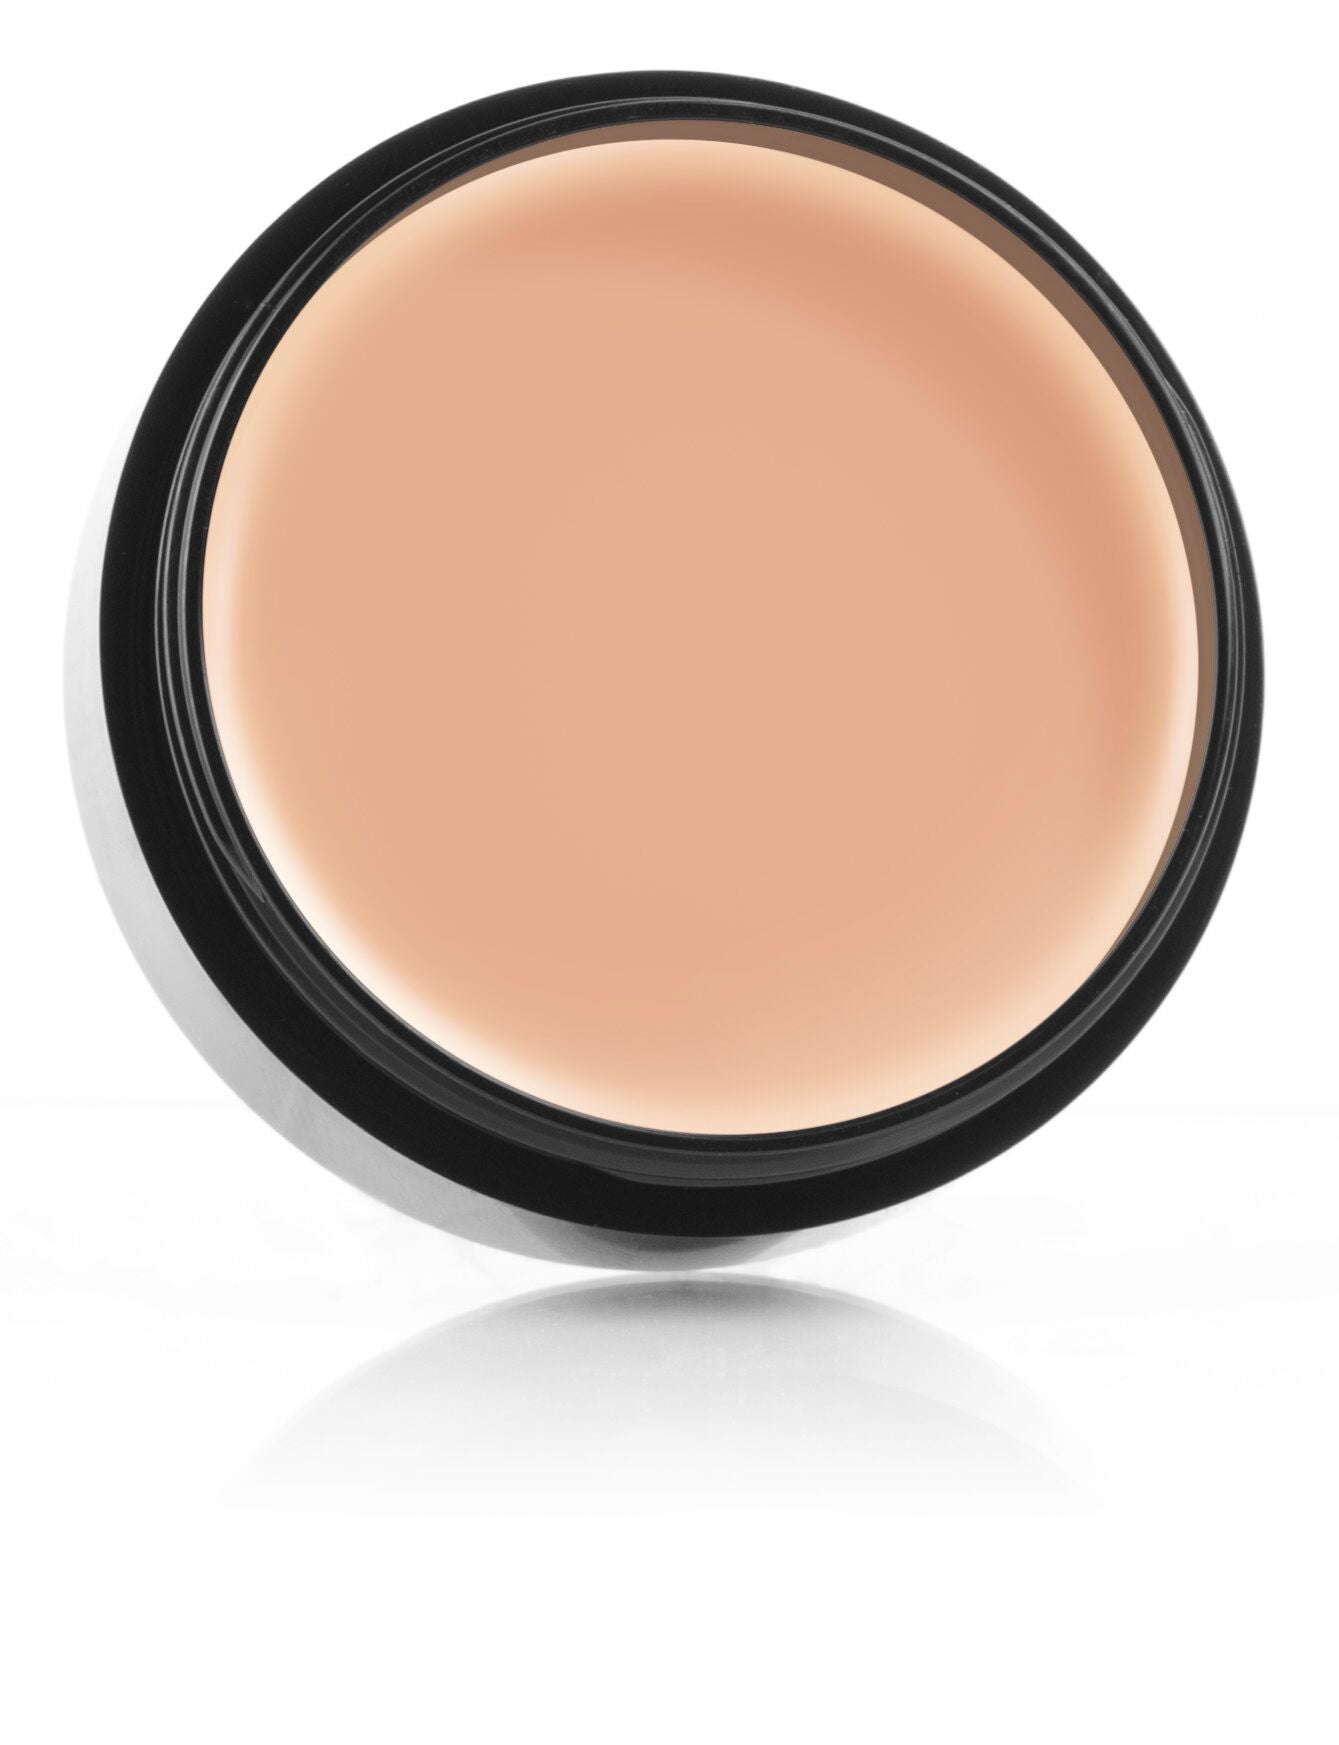 Mehron Makeup Celebre Pro HD Cream Foundation - Medium 3 - ADDROS.COM